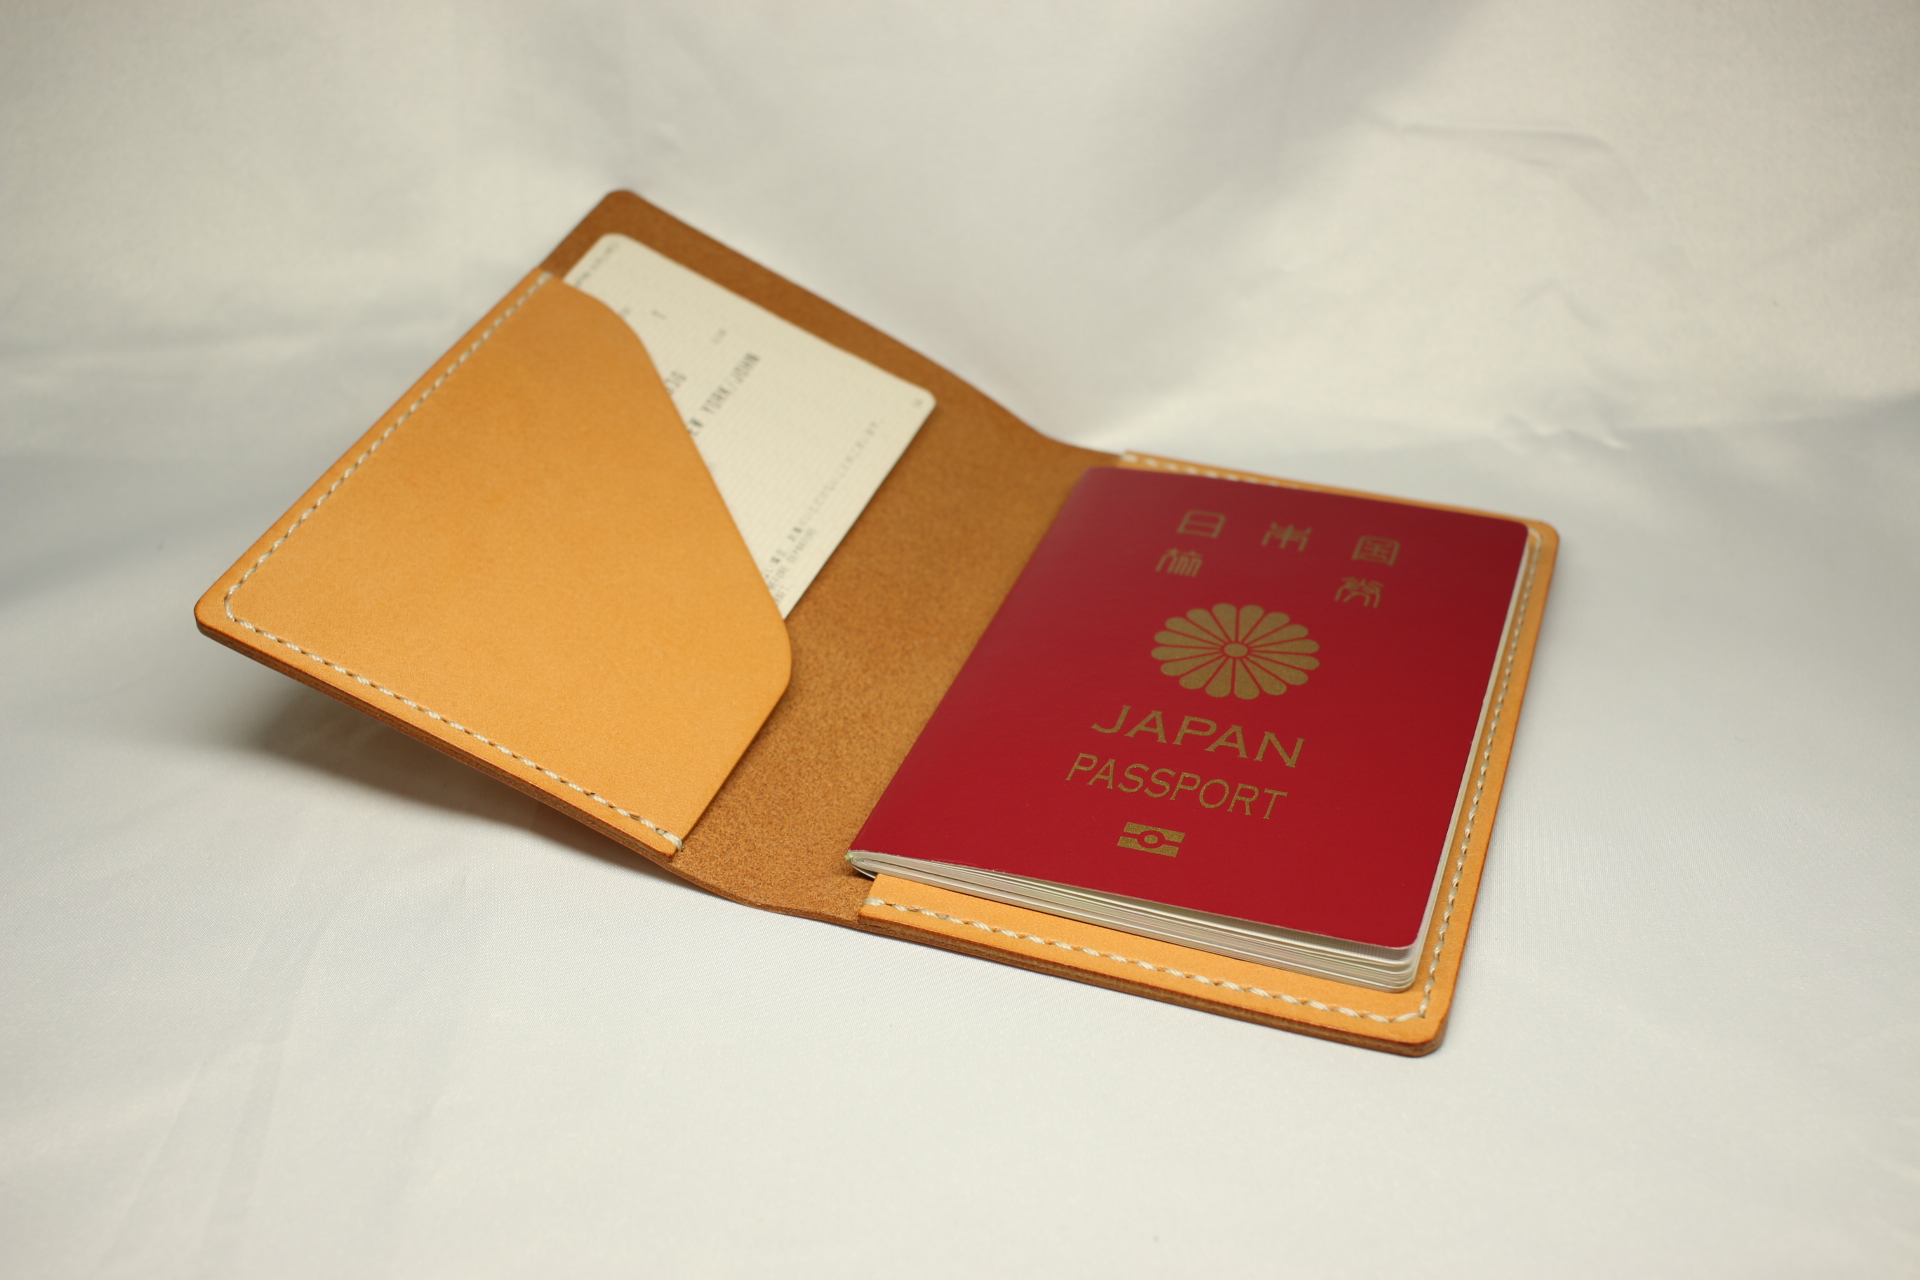 ヌメ革 手縫いのパスポートケース オレンジ色 Iichi ハンドメイド クラフト作品 手仕事品の通販